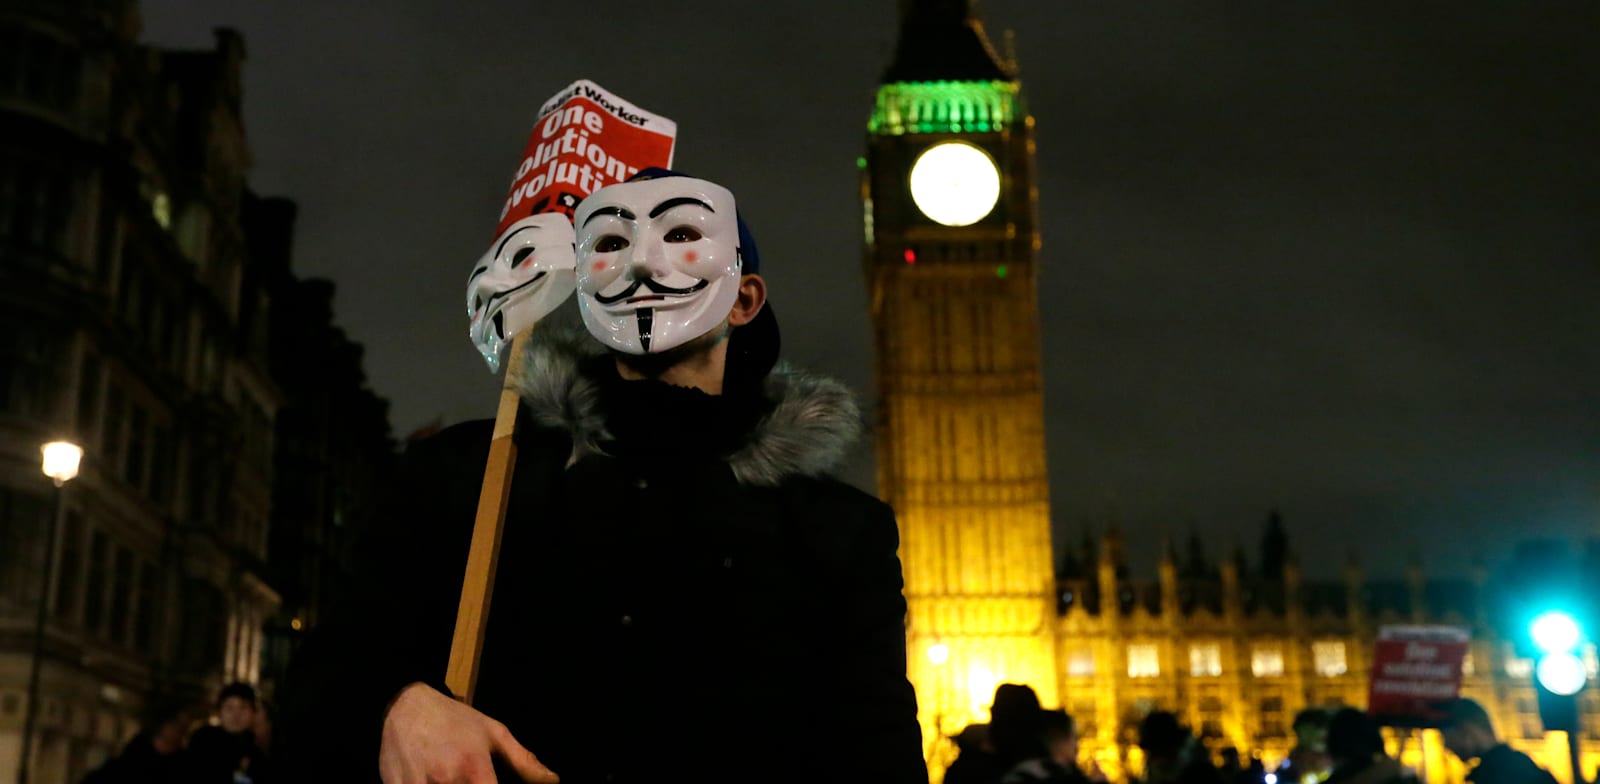 מפגין עם מסכה של גיא פוקס במצעד לכבוד יום גיא פוקס ב-5 בנובמבר 2015 / צילום: Associated Press, Tim Ireland